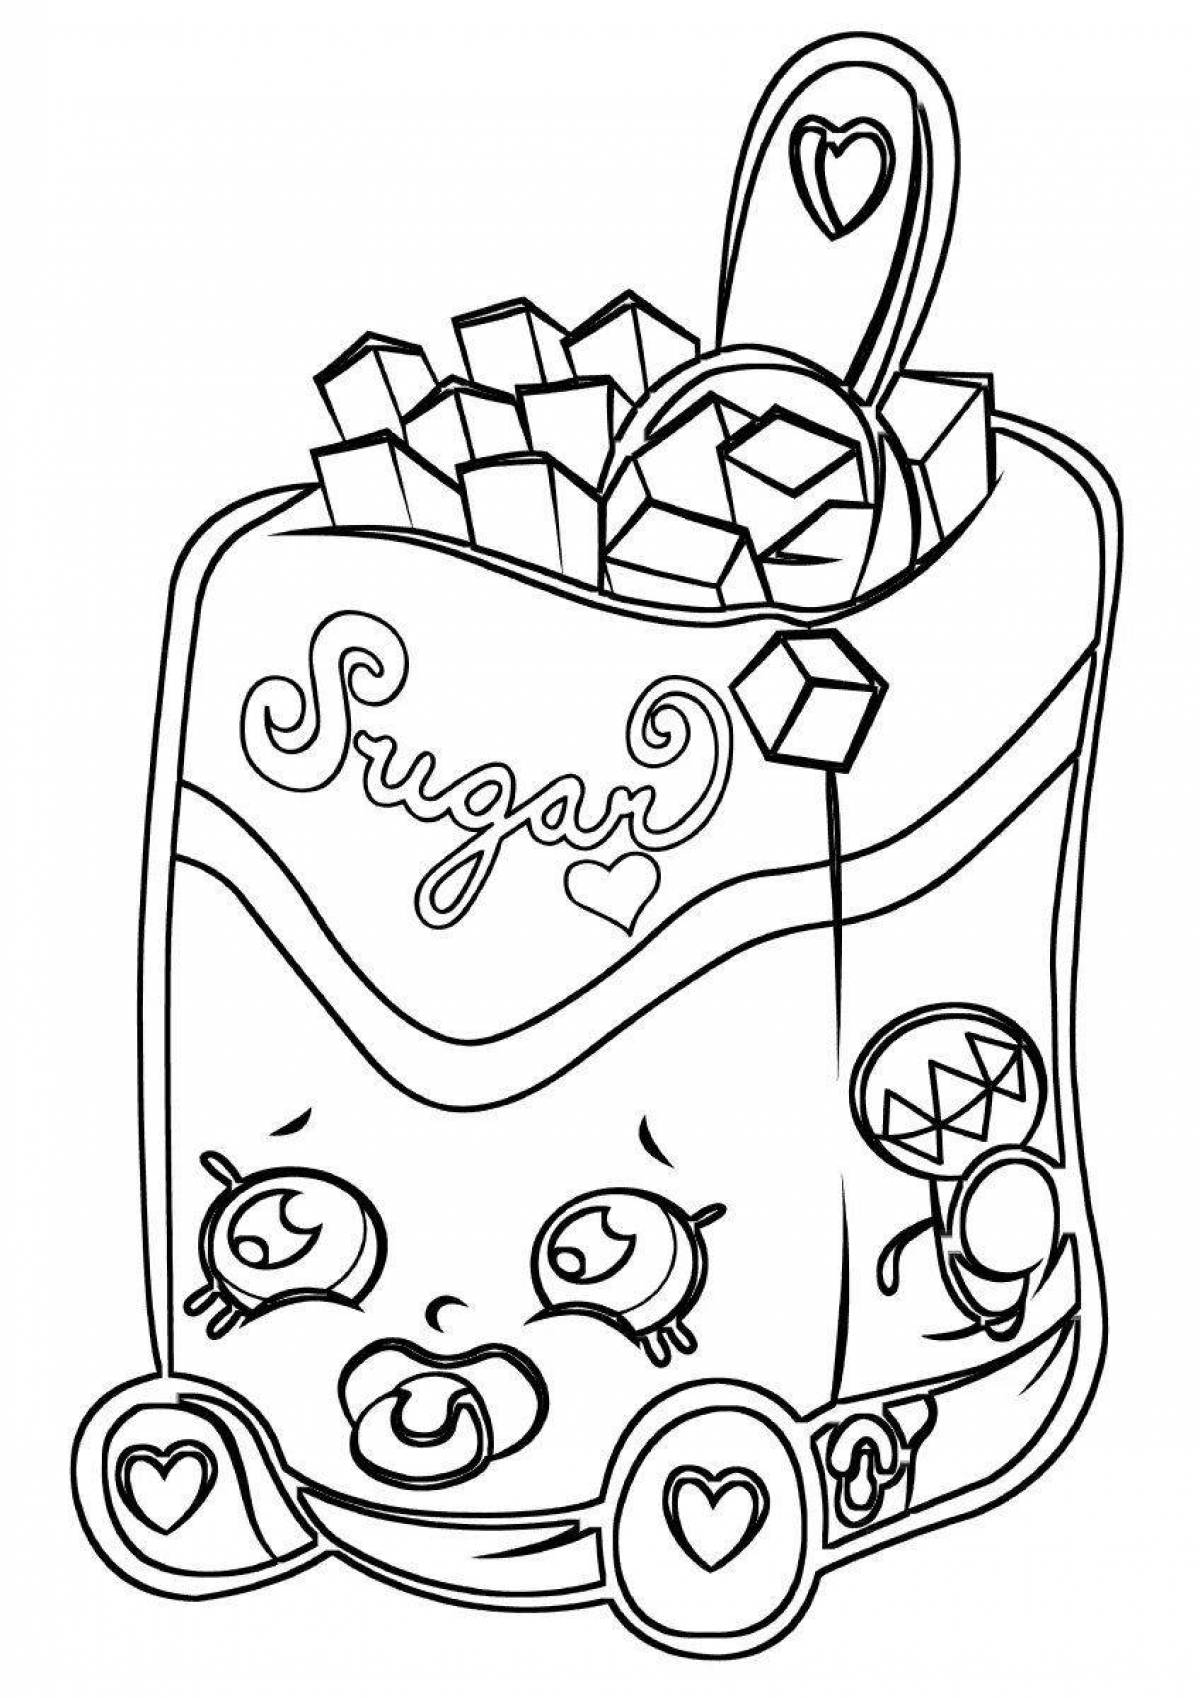 Cute sugar coloring page